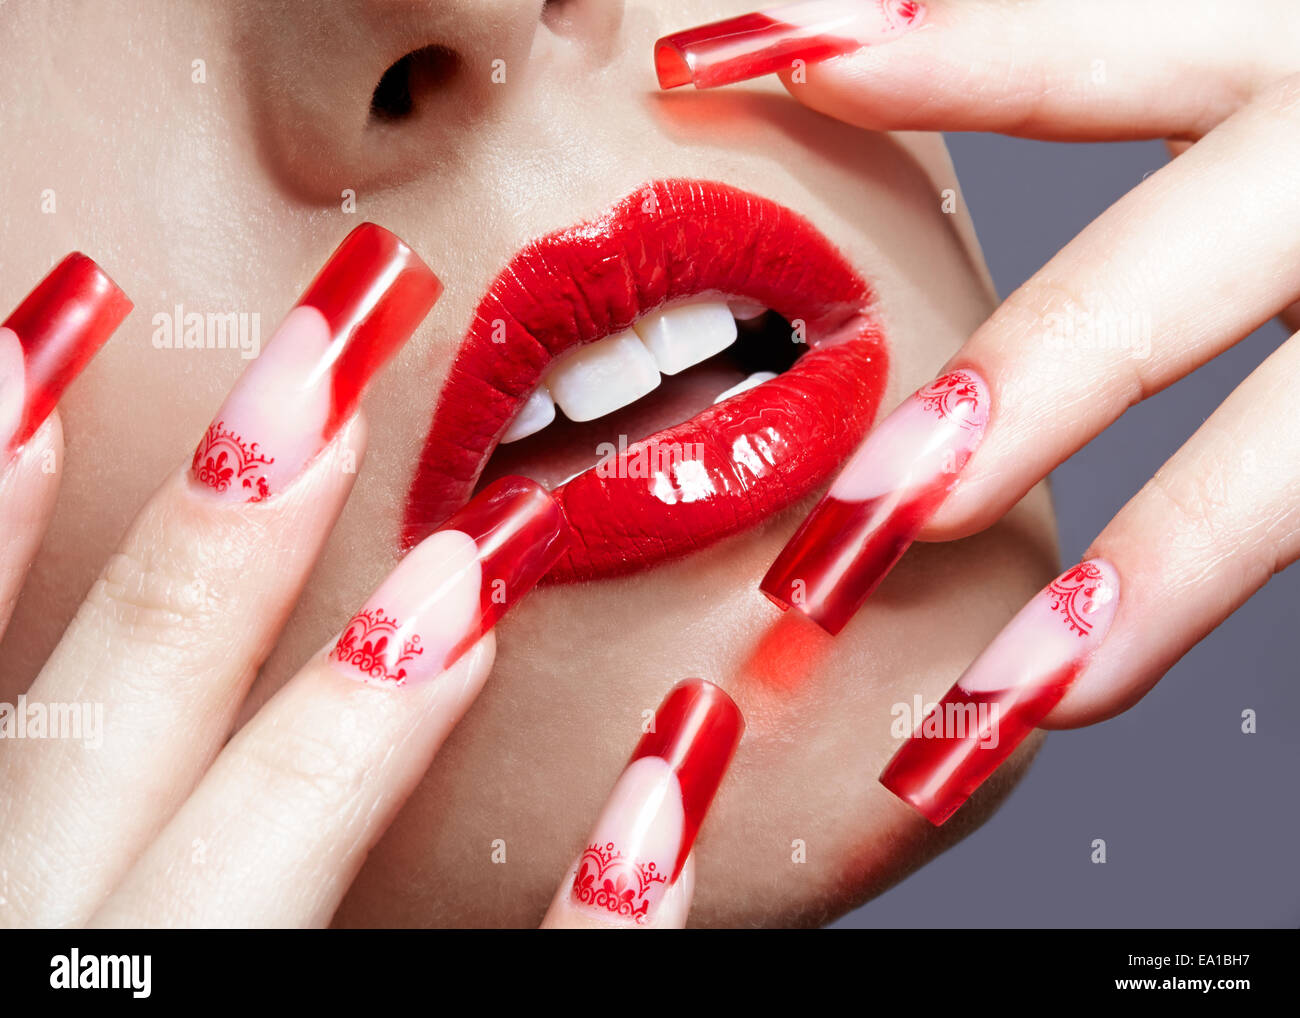 Manicura uñas acrílicas Fotografía de stock - Alamy